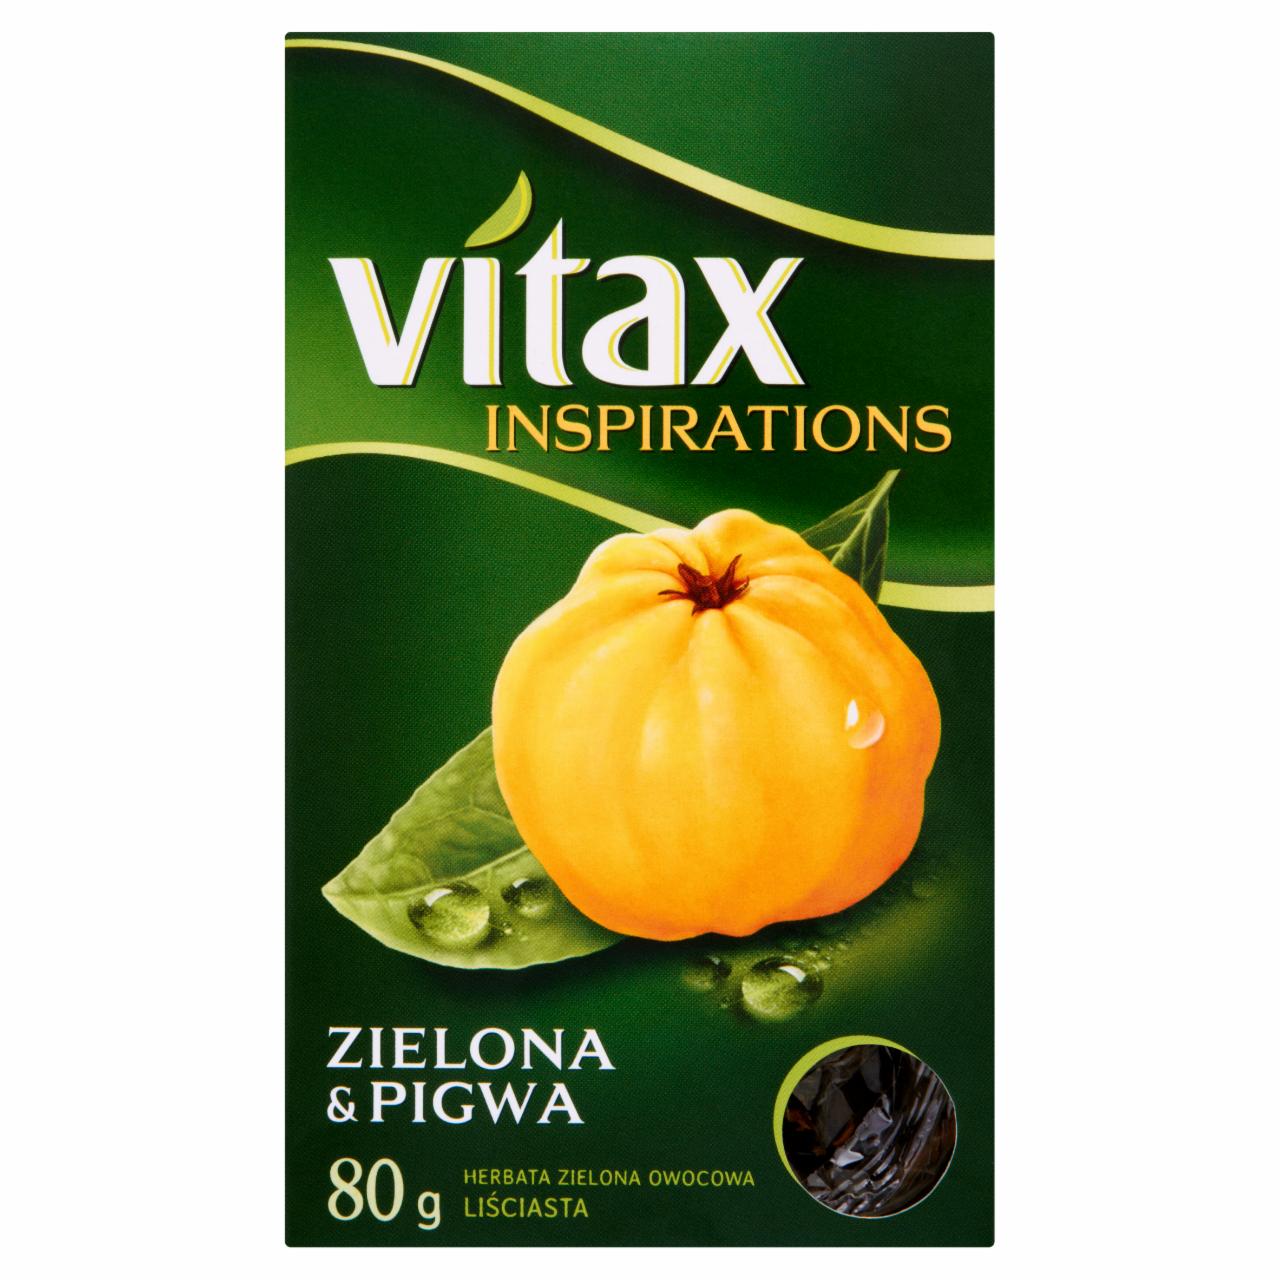 Zdjęcia - Vitax Inspirations Zielona and Pigwa Herbata zielona owocowa liściasta 80 g